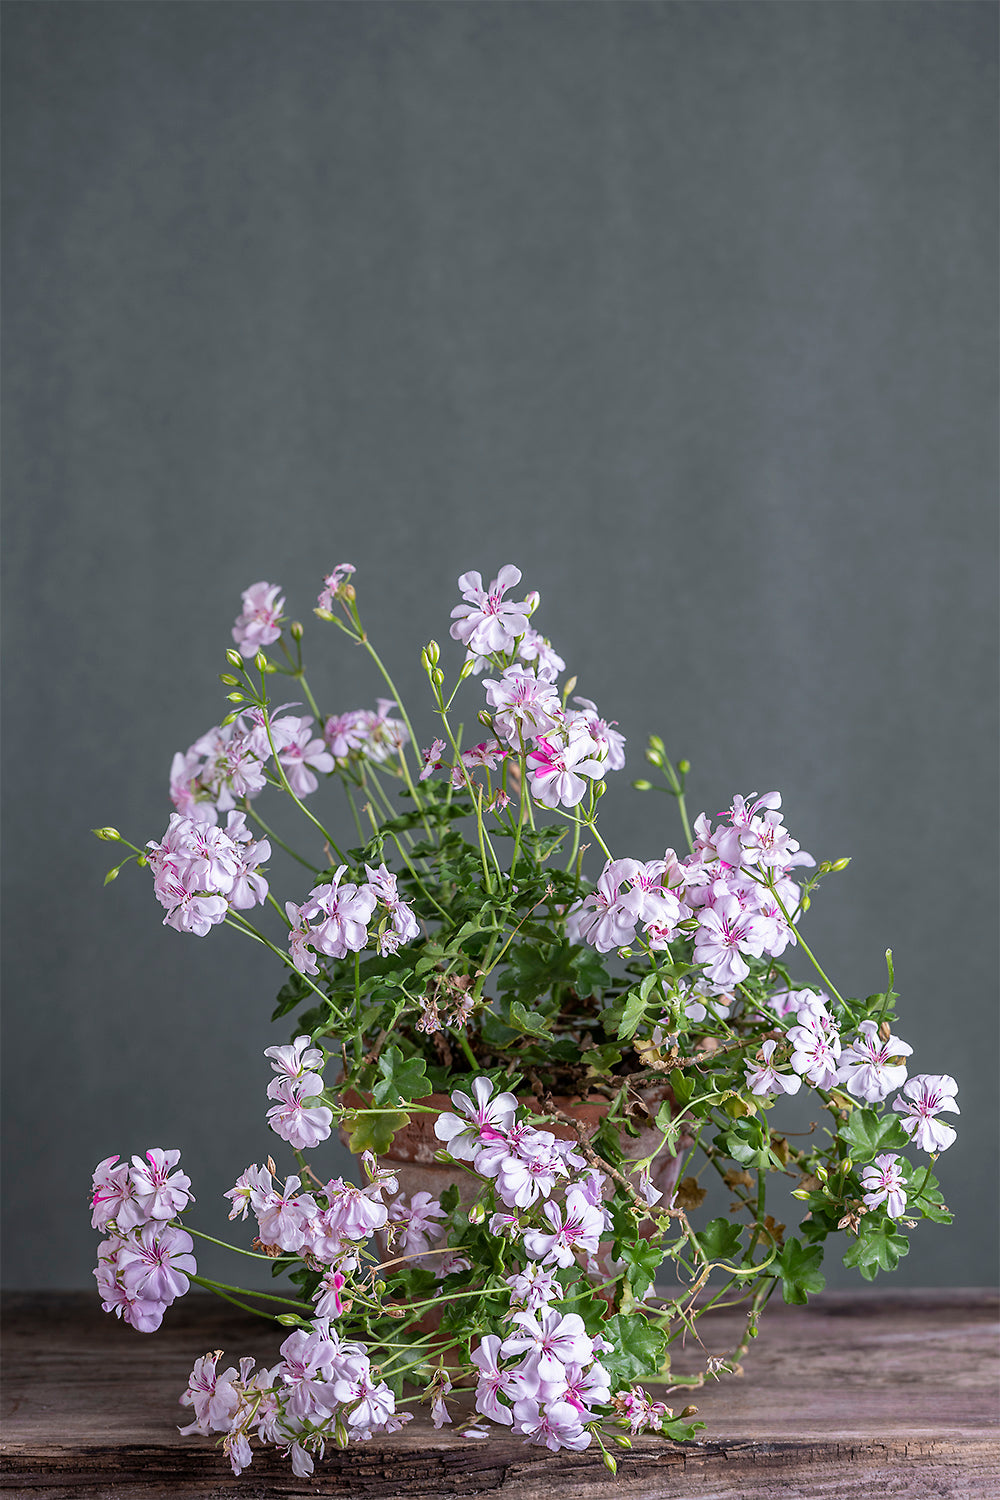 Pelargonium 'Icing Sugar': geranio con incantevoli fiori bianco-fucsia, presentato con cura in un vaso di terracotta su un luminoso tavolo di legno.